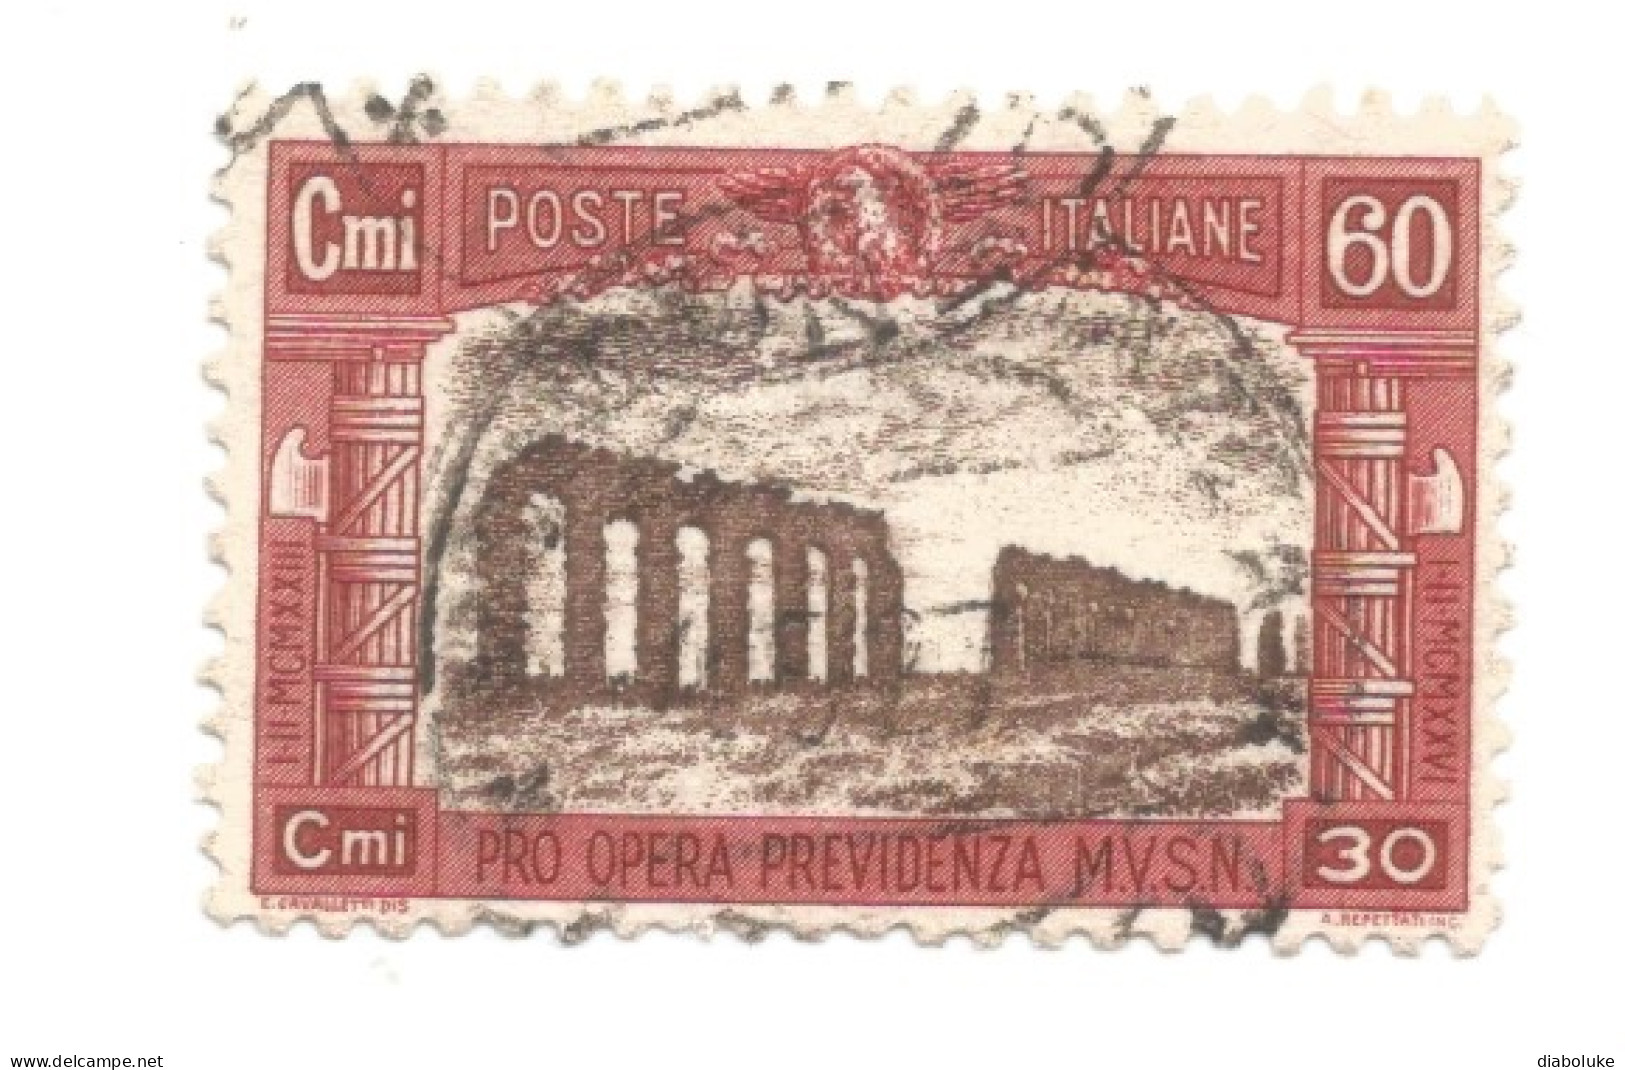 (REGNO D'ITALIA) 1926, PRO OPERA PREVIDENZIA MILIZIA - Serie Di 4 Francobolli Usati, Annulli Da Periziare - Luchtpost